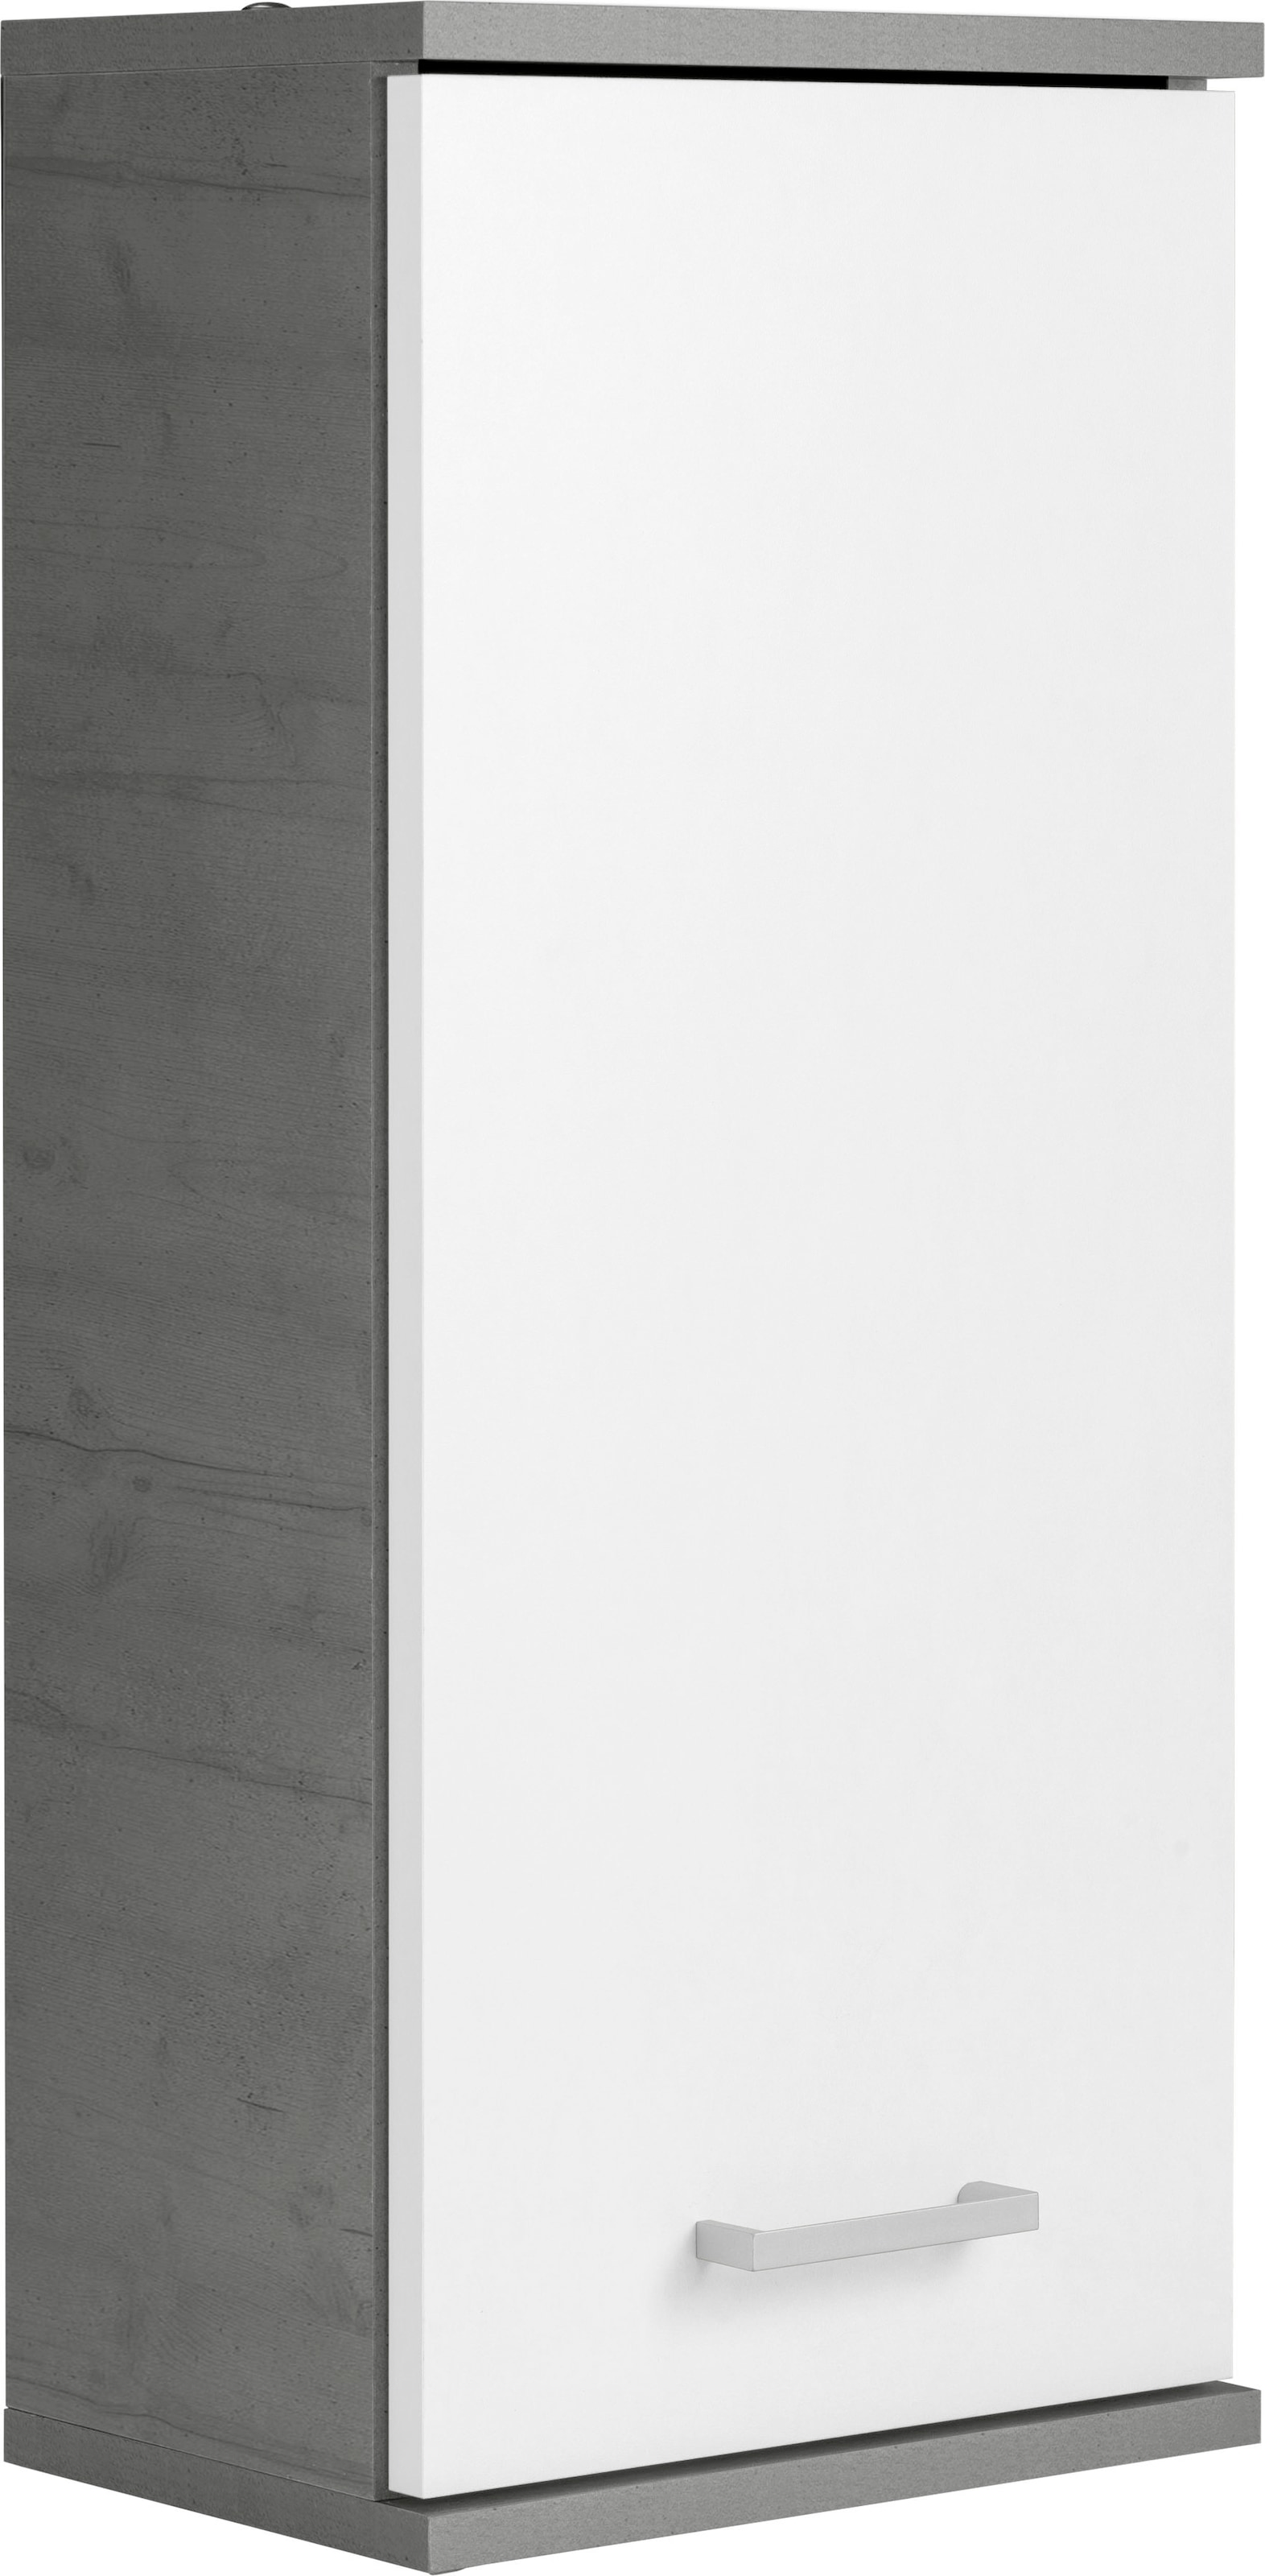 Schildmeyer Hängeschrank »Mobes«, Breite/Höhe: 30,3/70,8 cm, Tür beidseitig  montierbar, Badschrank kaufen online bei OTTO